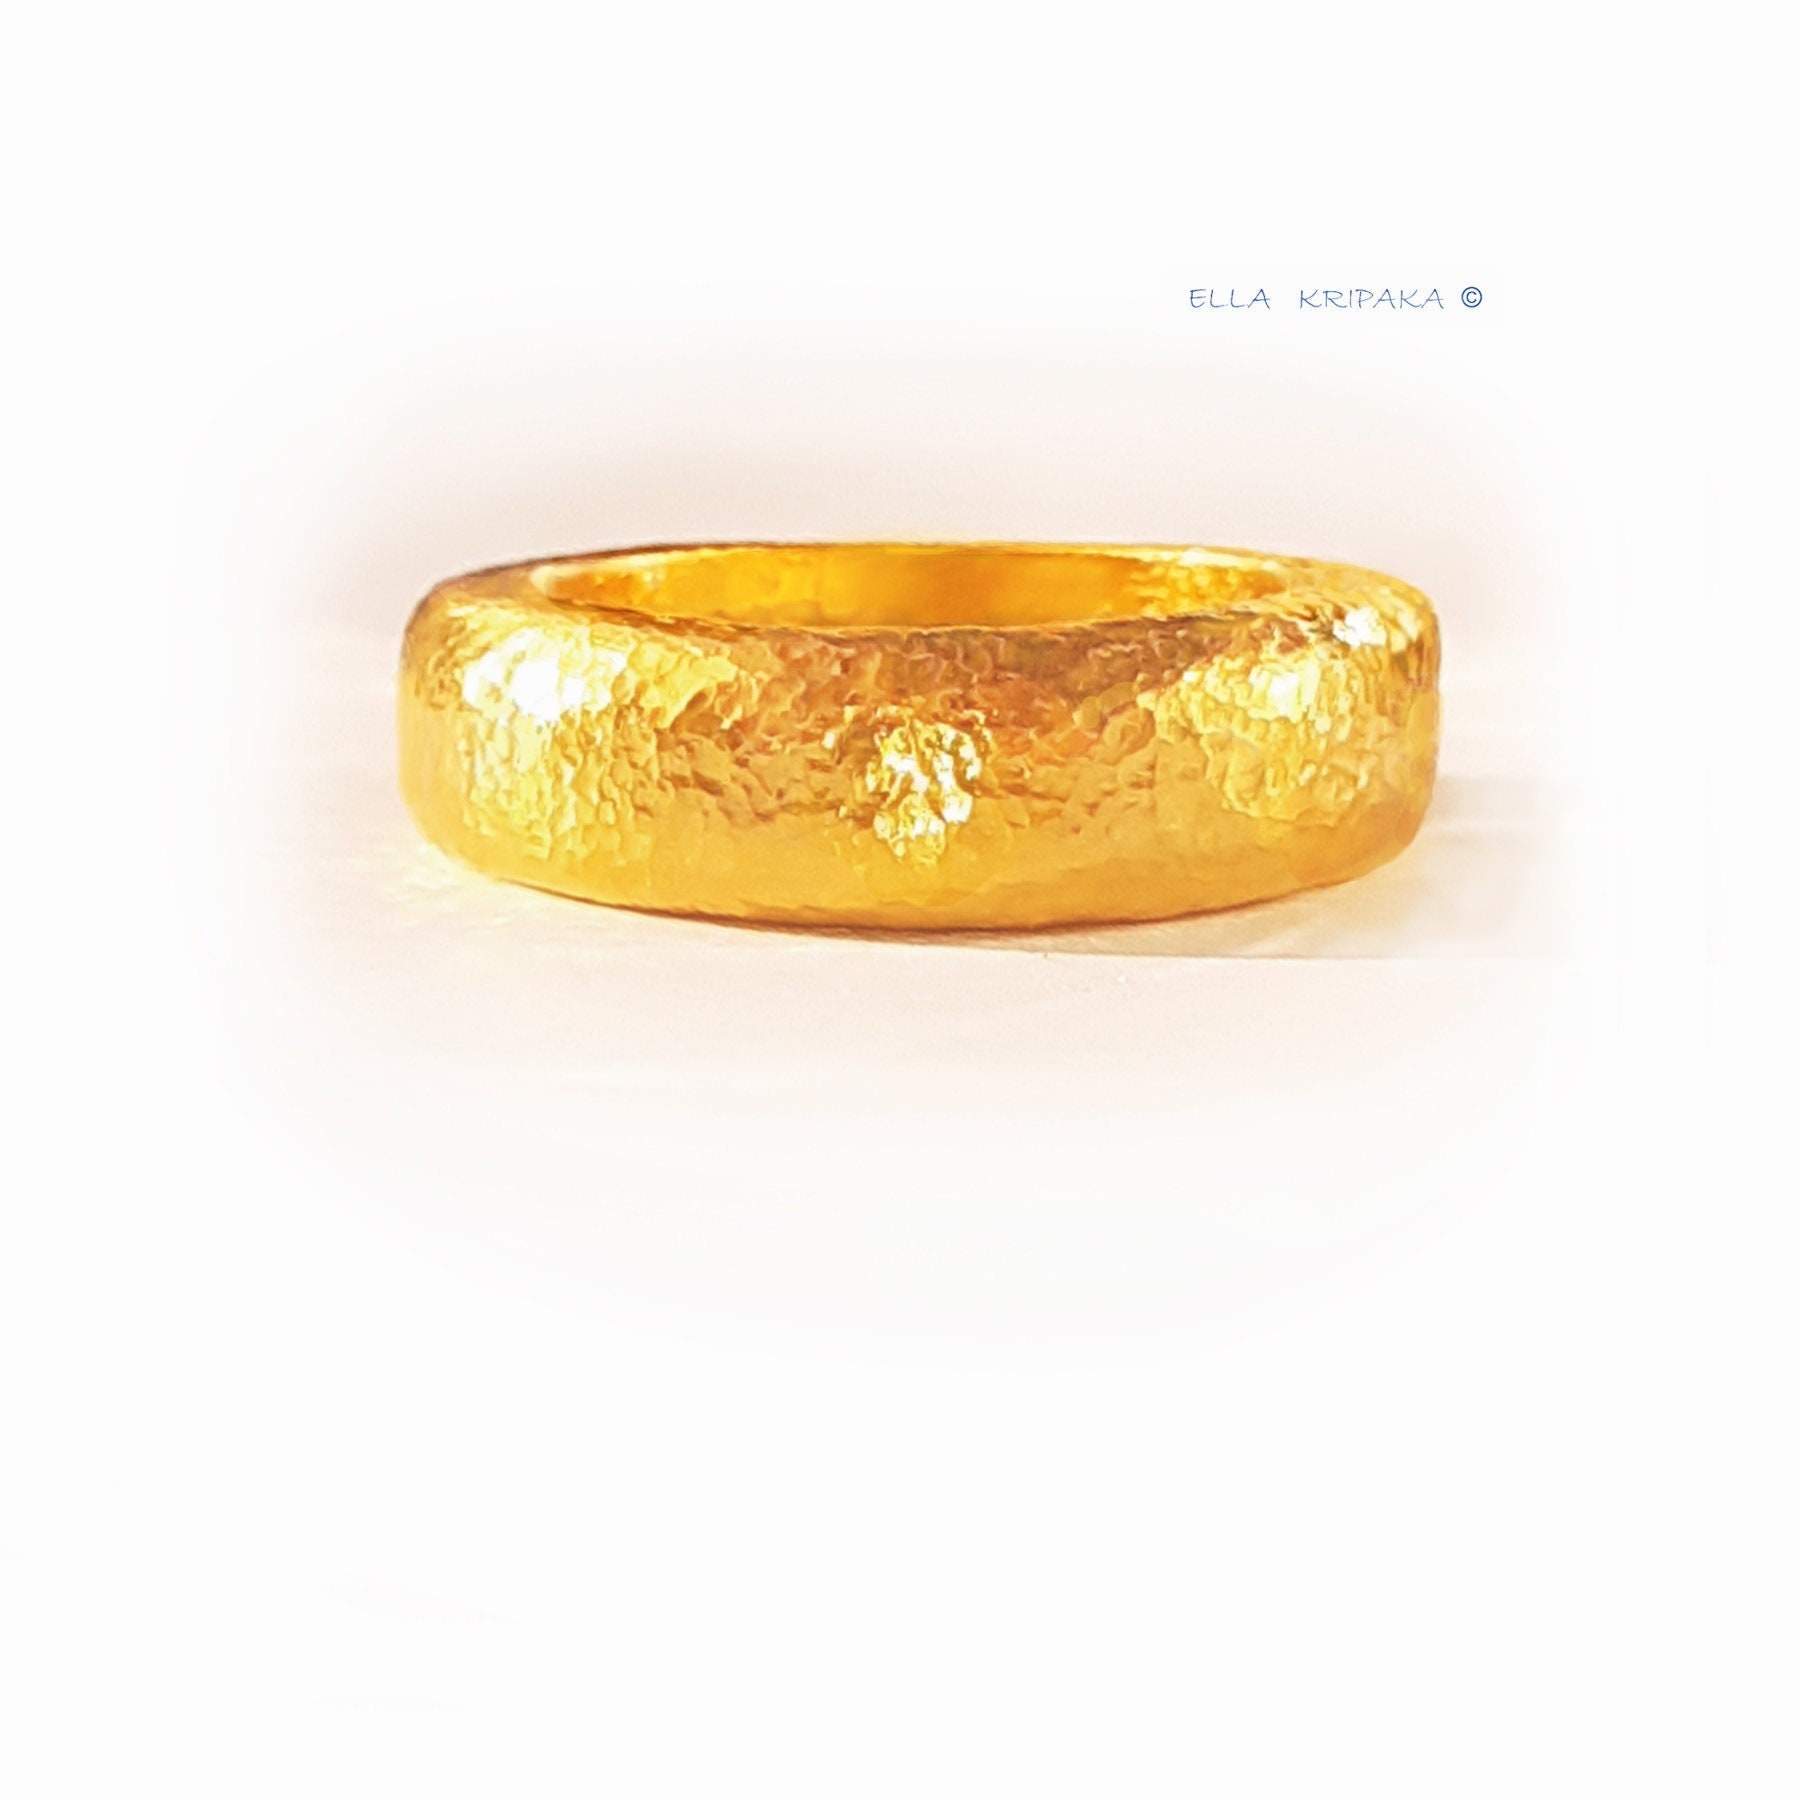 24K Gold Ring Dubai Gold Ring for Women 3481 3D model 3D printable |  CGTrader